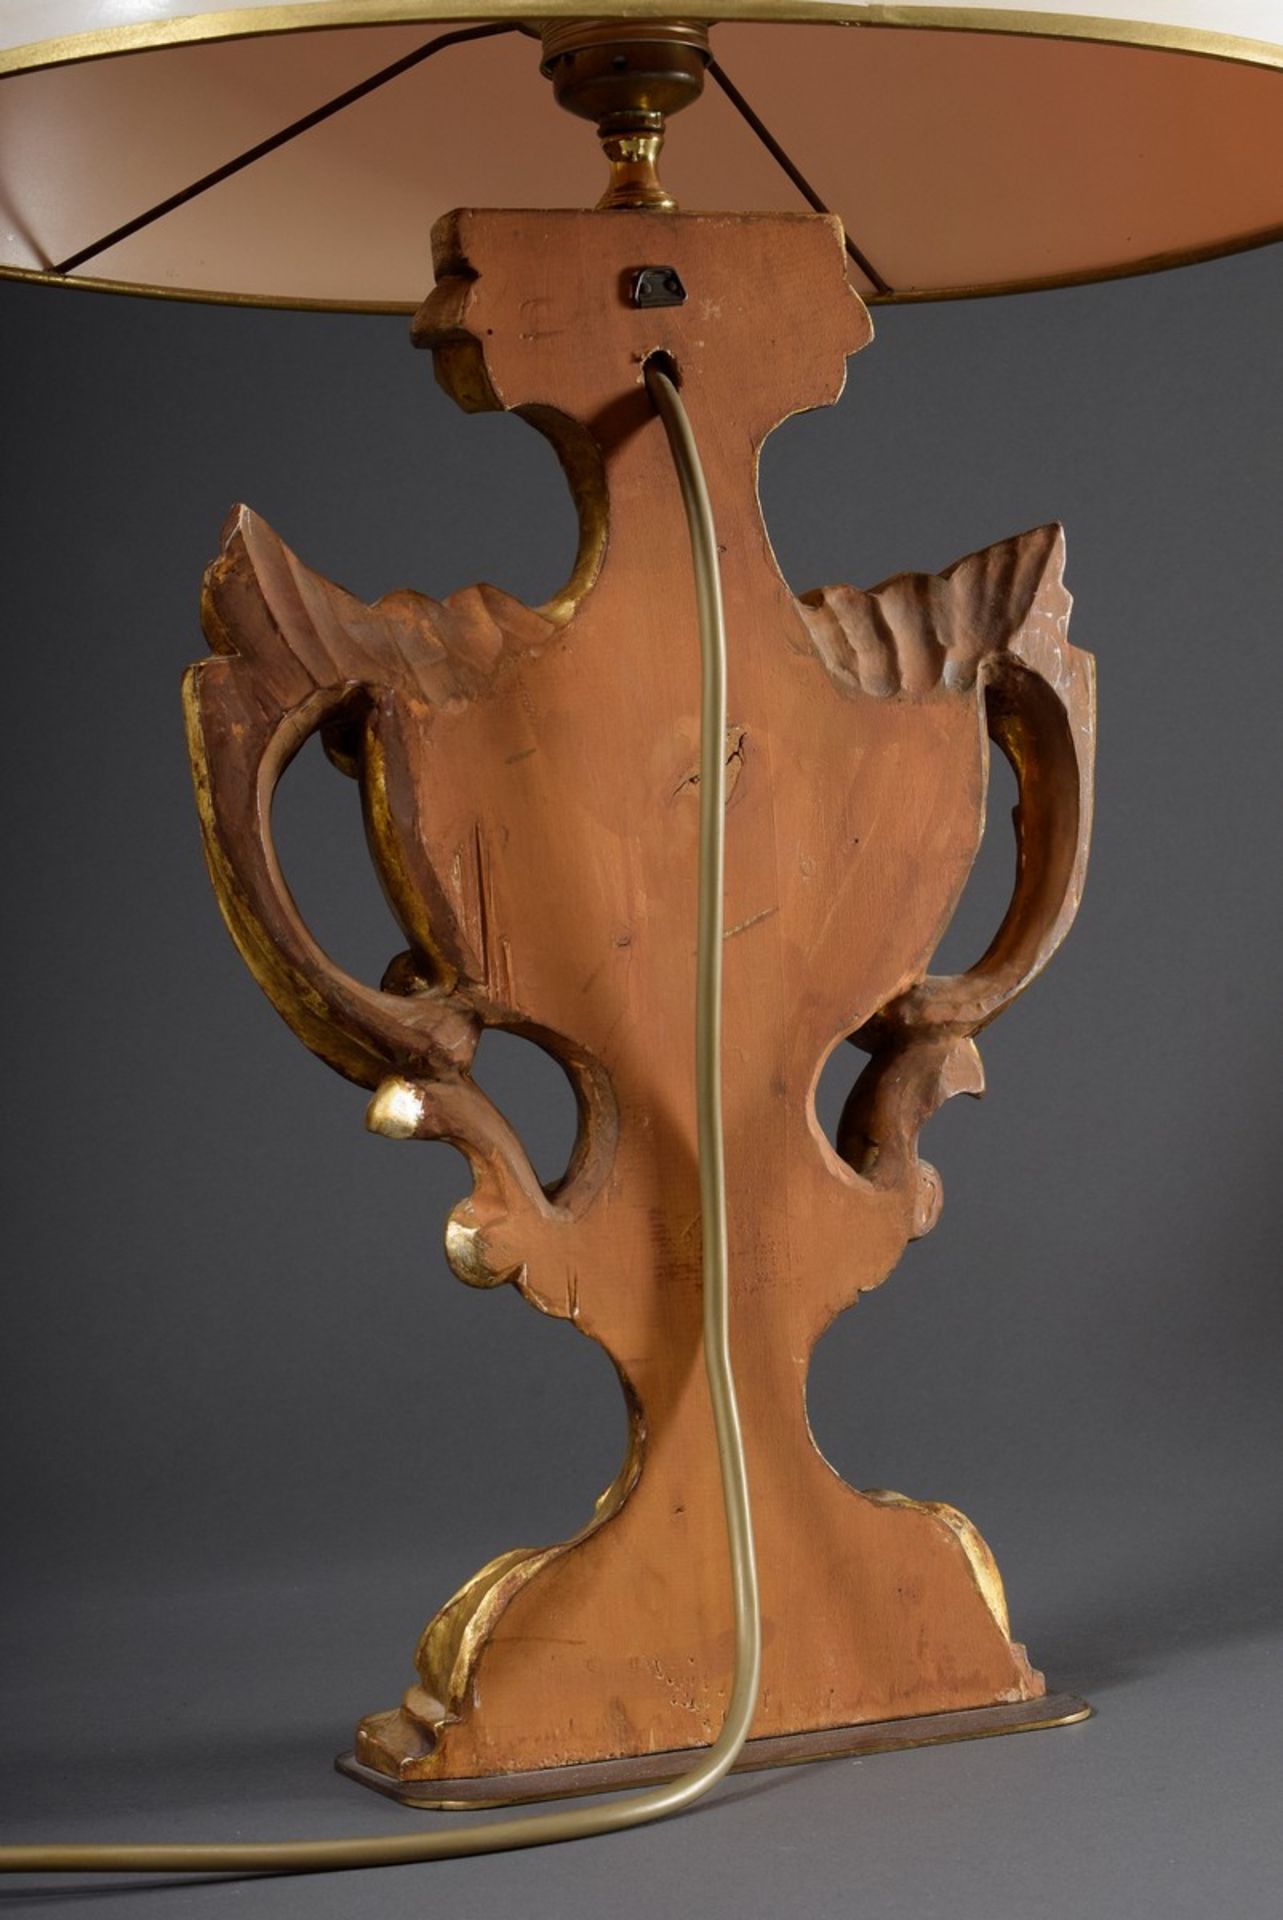 Geschnitzte Holz Vase nach barockem Vorbild, weiß-gold gefasst, als Lampe montiert, H. 64cm, leicht - Bild 3 aus 5